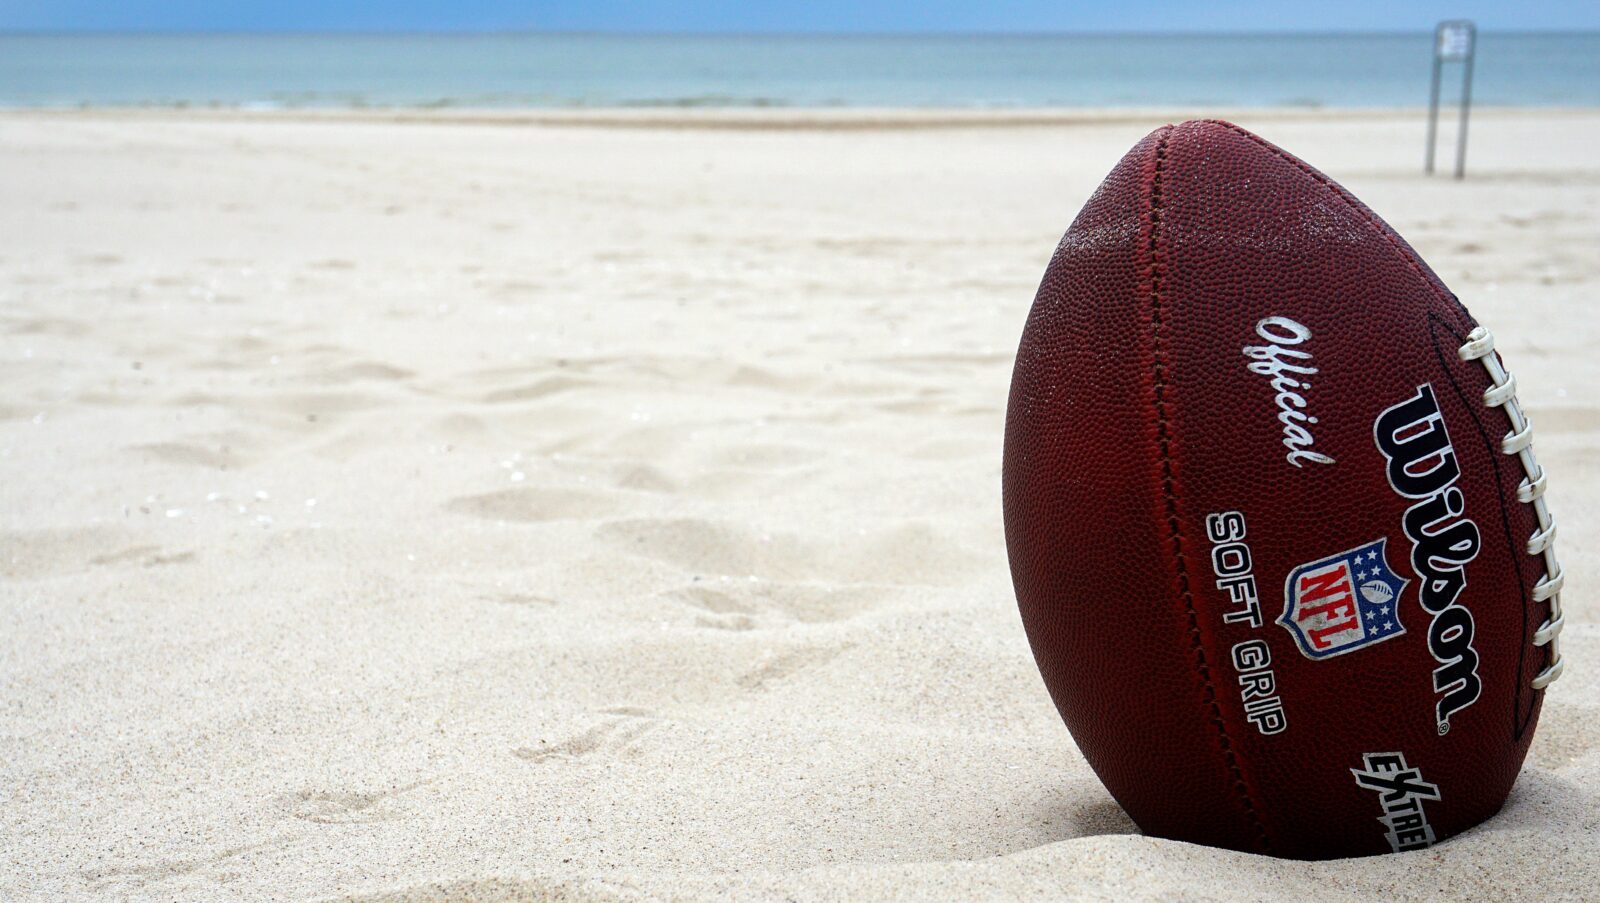  2023/03/Football-on-beach.jpg 